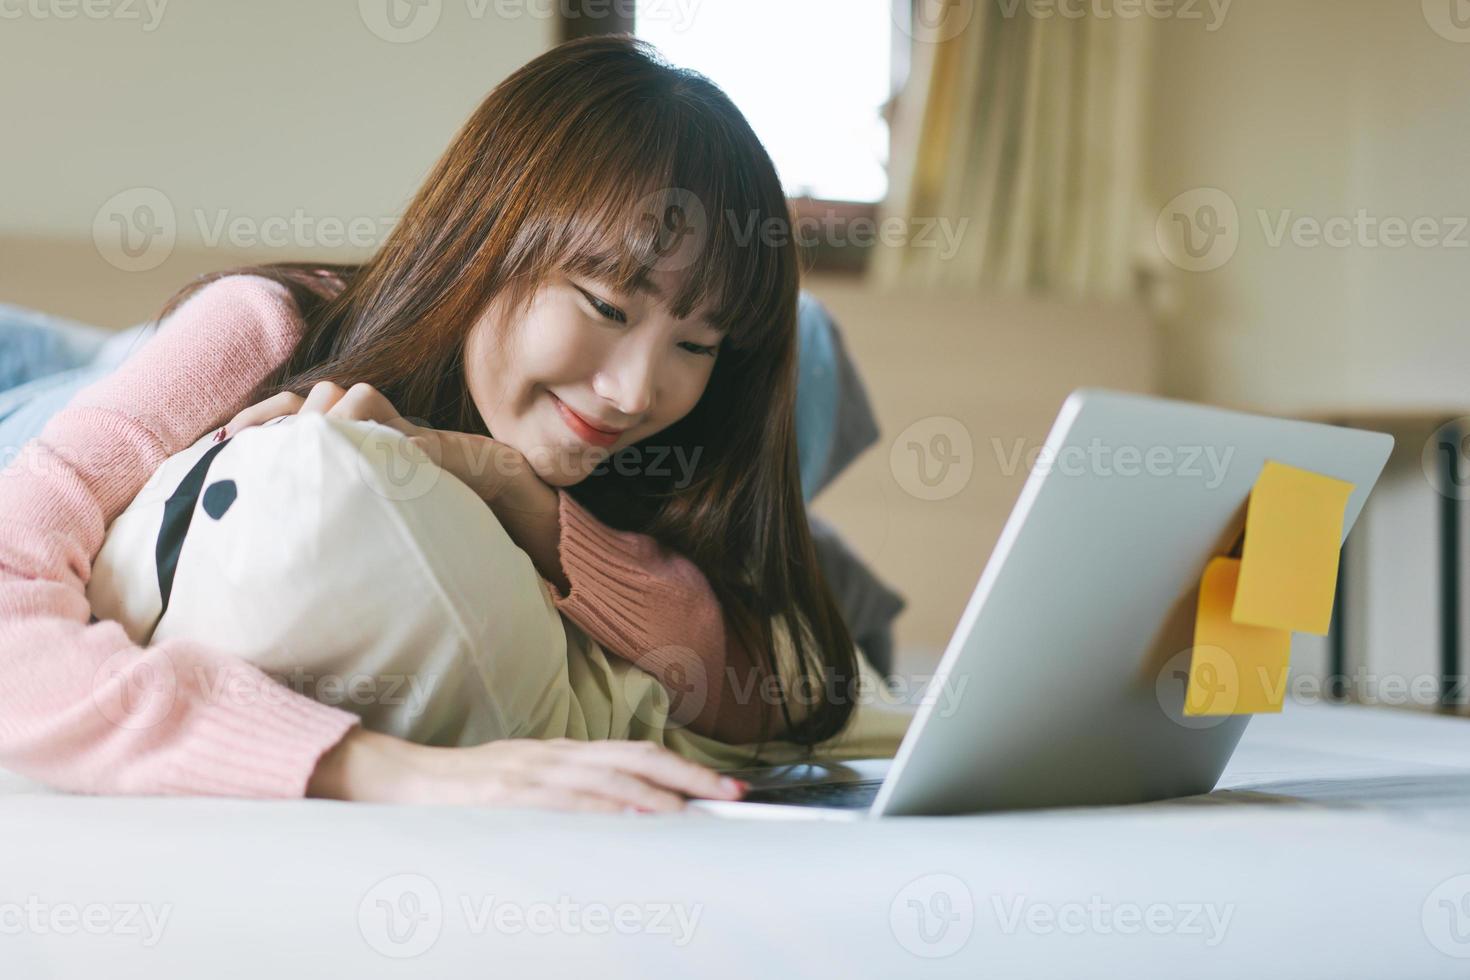 asiatisk tonåringskvinna i sovrummet och använder datorn för arbete och studier på morgonen på helgen. foto